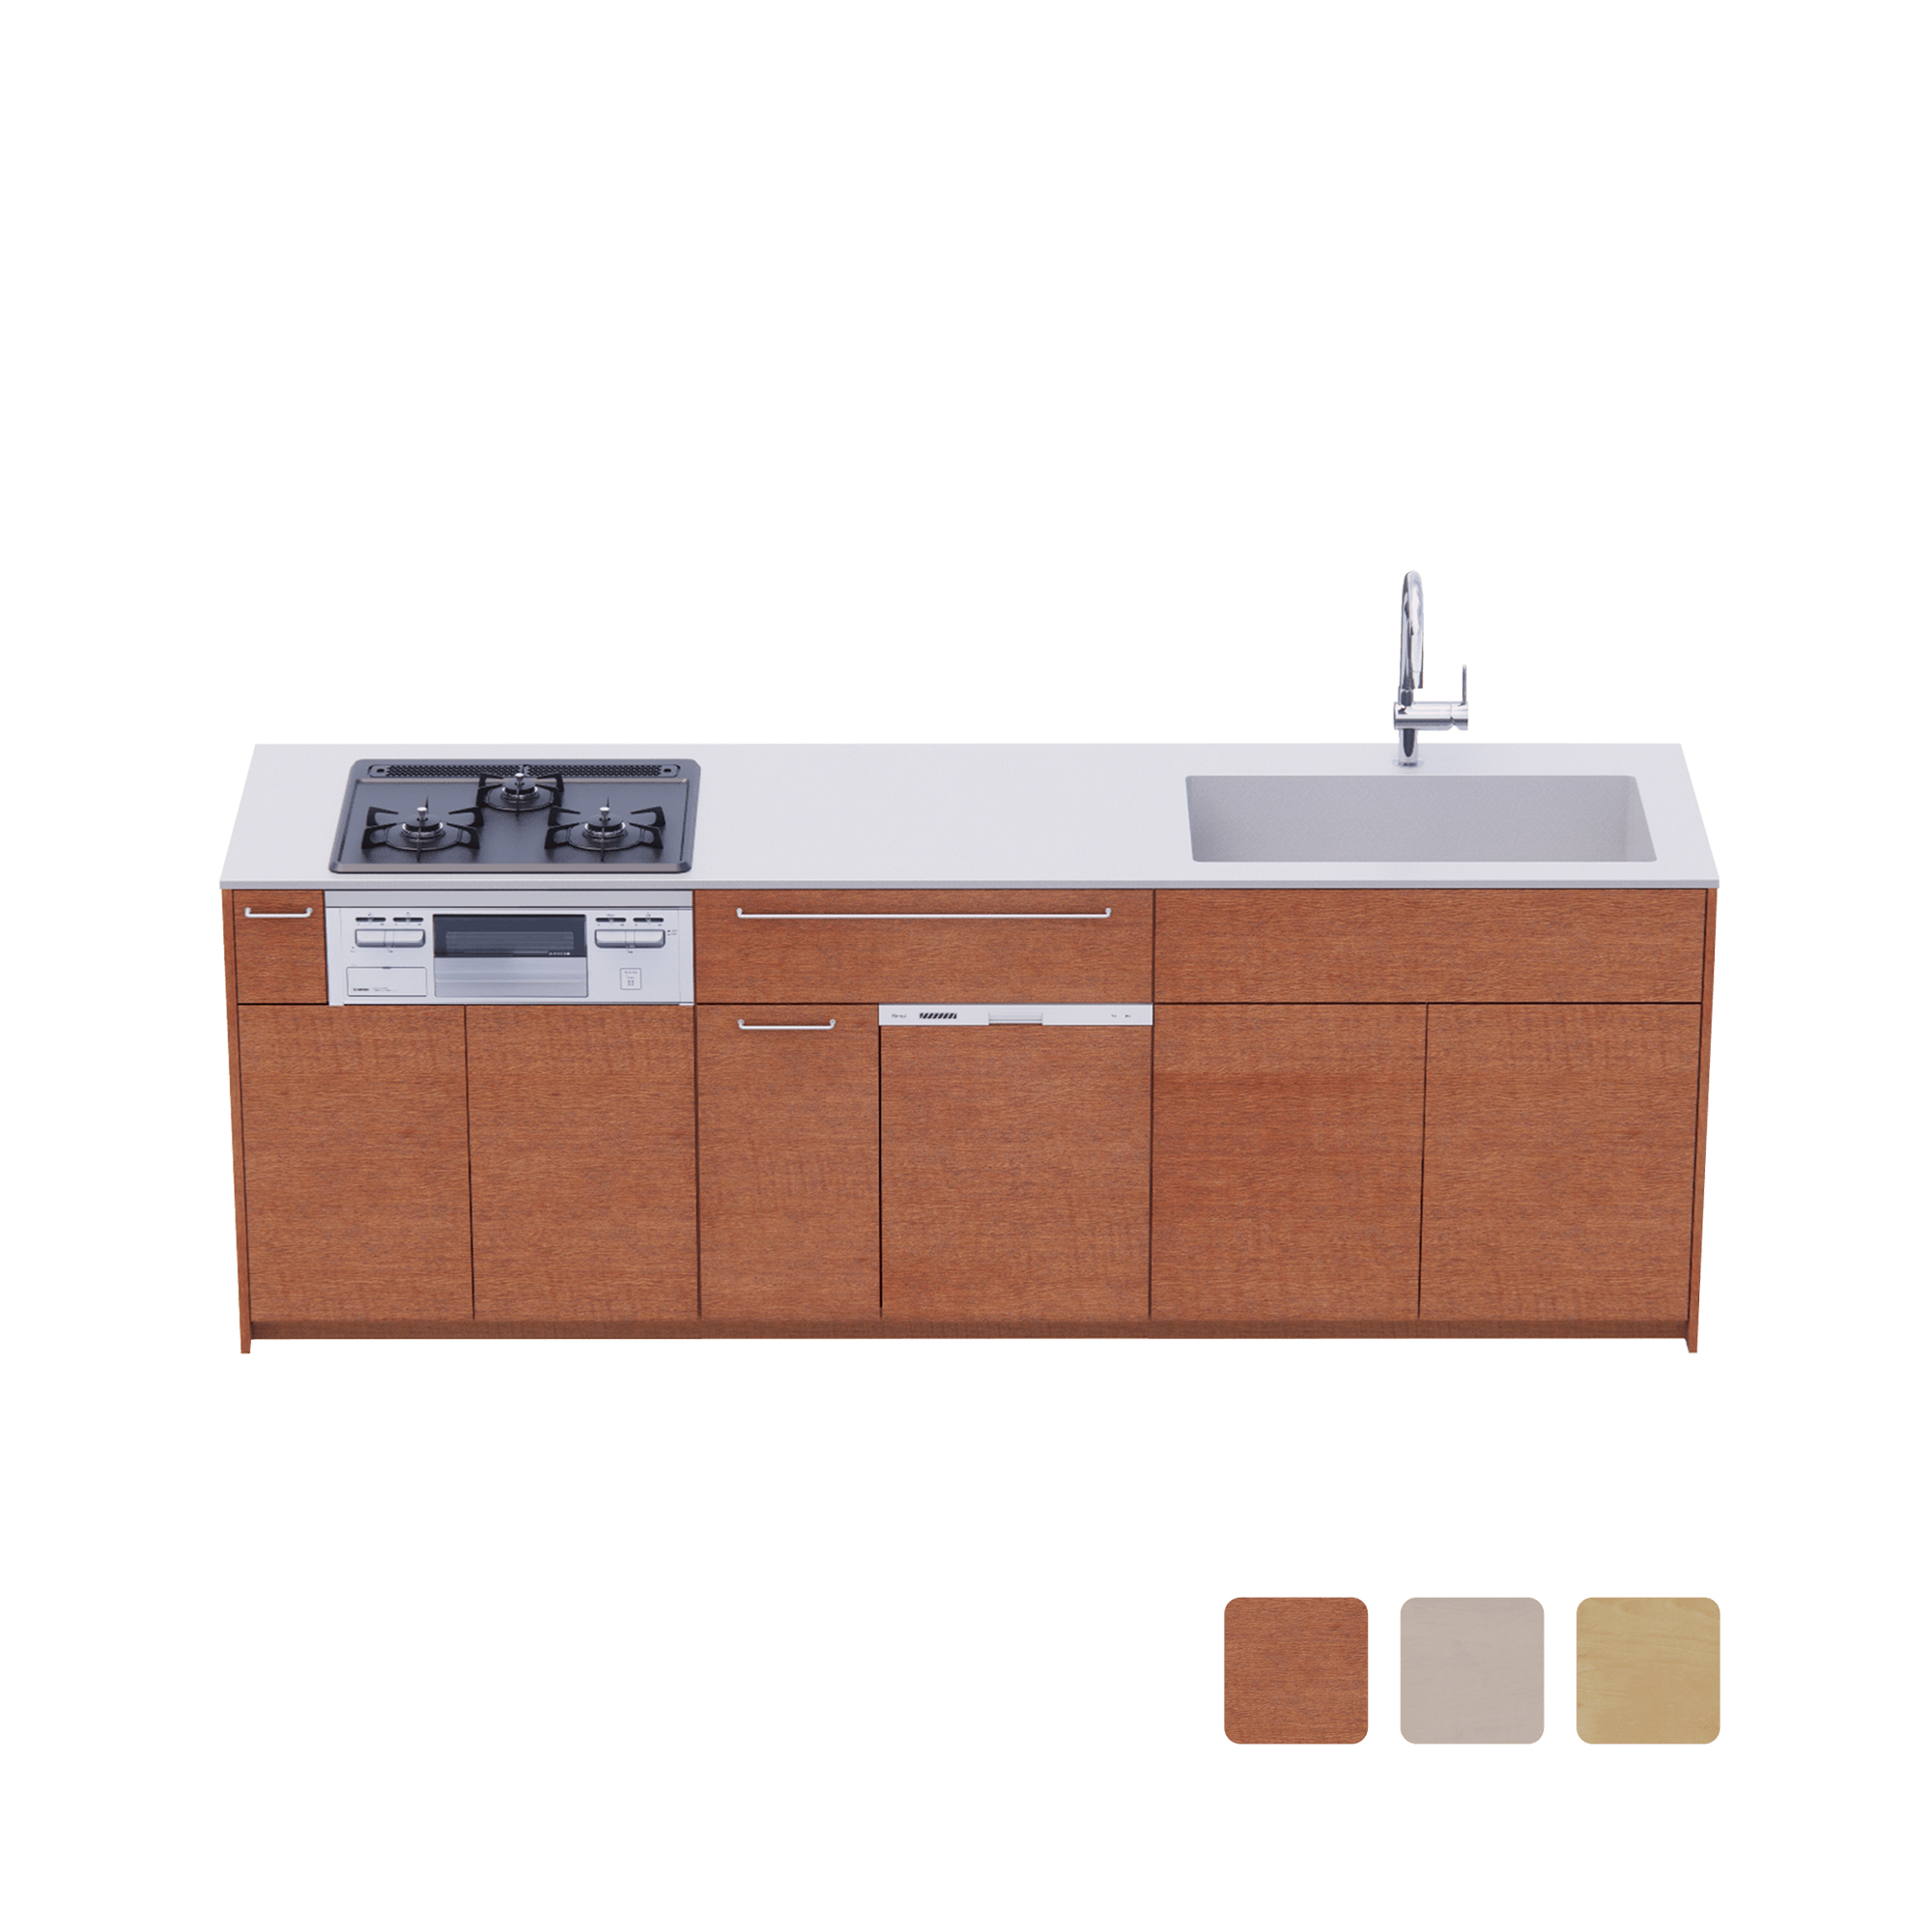 木製システムキッチン 壁付け型 W2440～2740・コンロあり / オーブンなし / 食洗機あり KB-KC022-26-G183 壁付け型 W2440　※ 別売り品の水栓・コンロ・食洗機を設置した時のイメージです